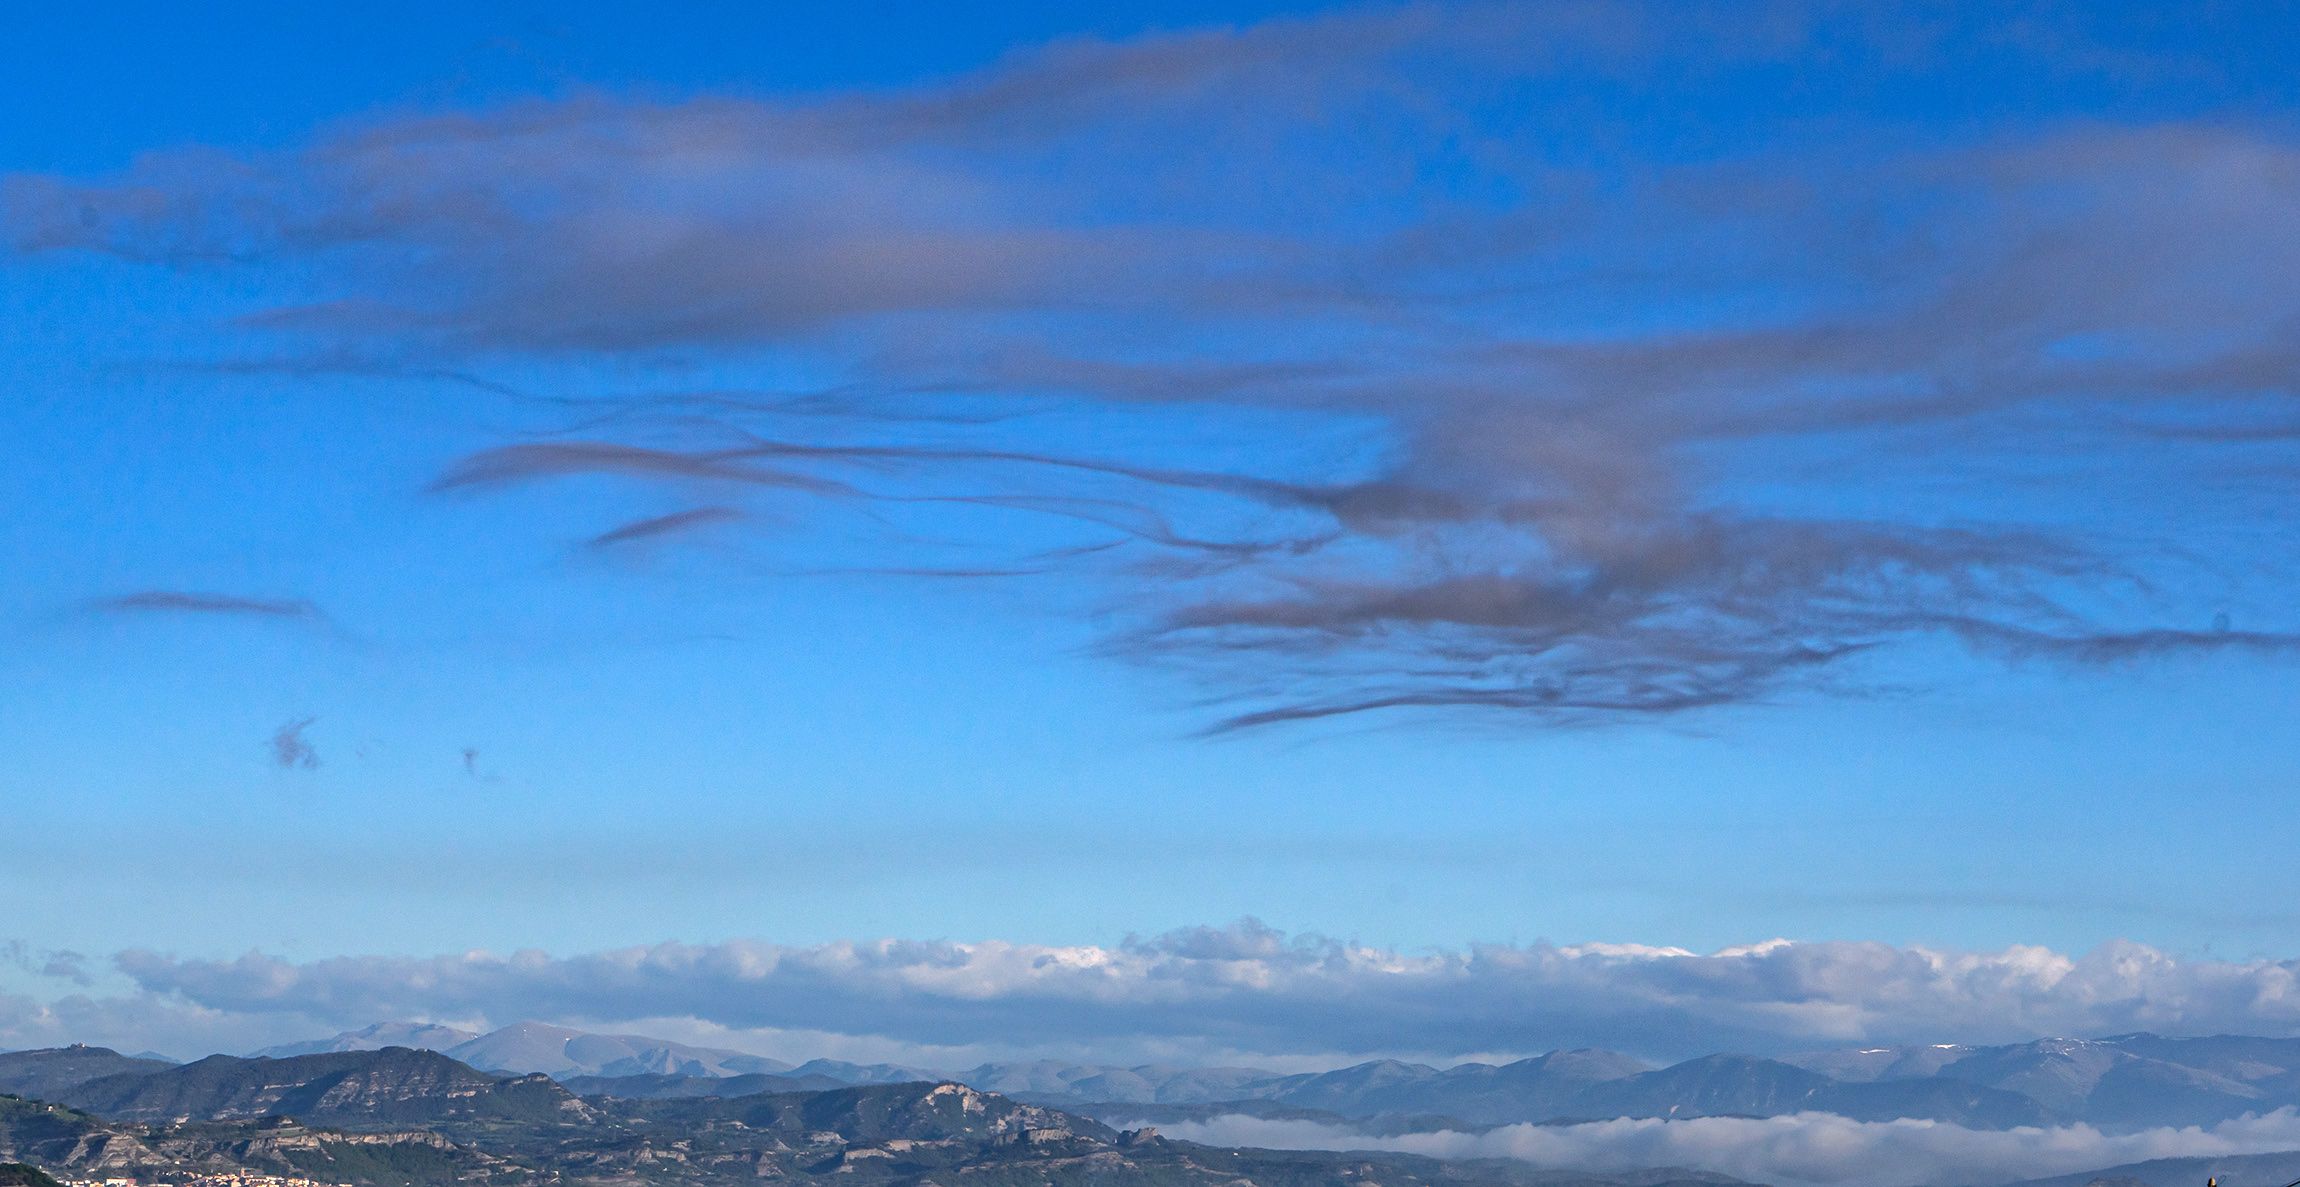 Boires altes i núvols fantasma al pantà de Sau, des de Tavèrnoles (Osona).